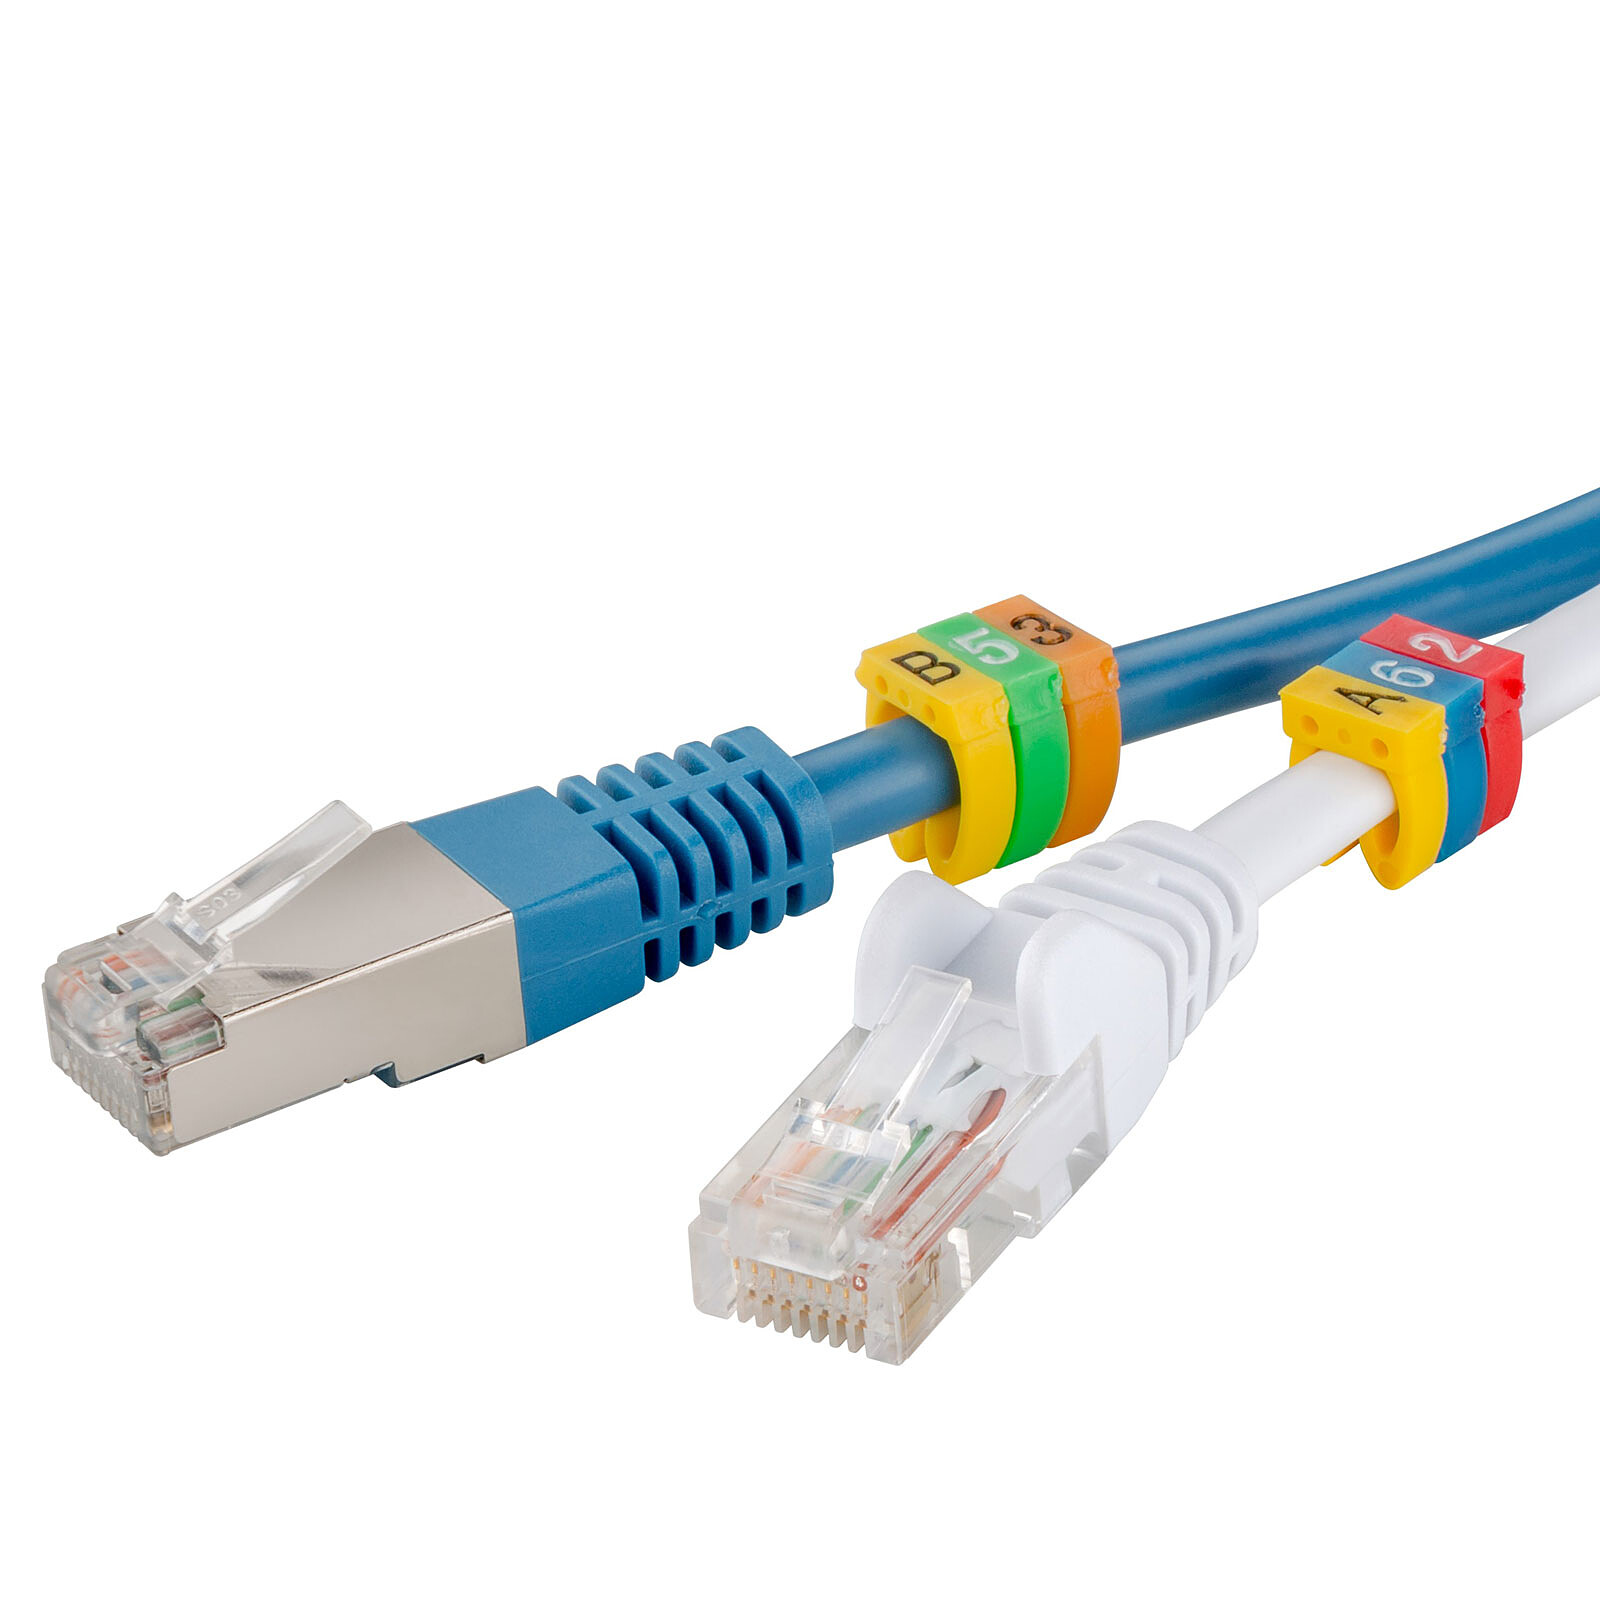 Goobay Set Cable Management - Blanc - Serre câble - Garantie 3 ans LDLC